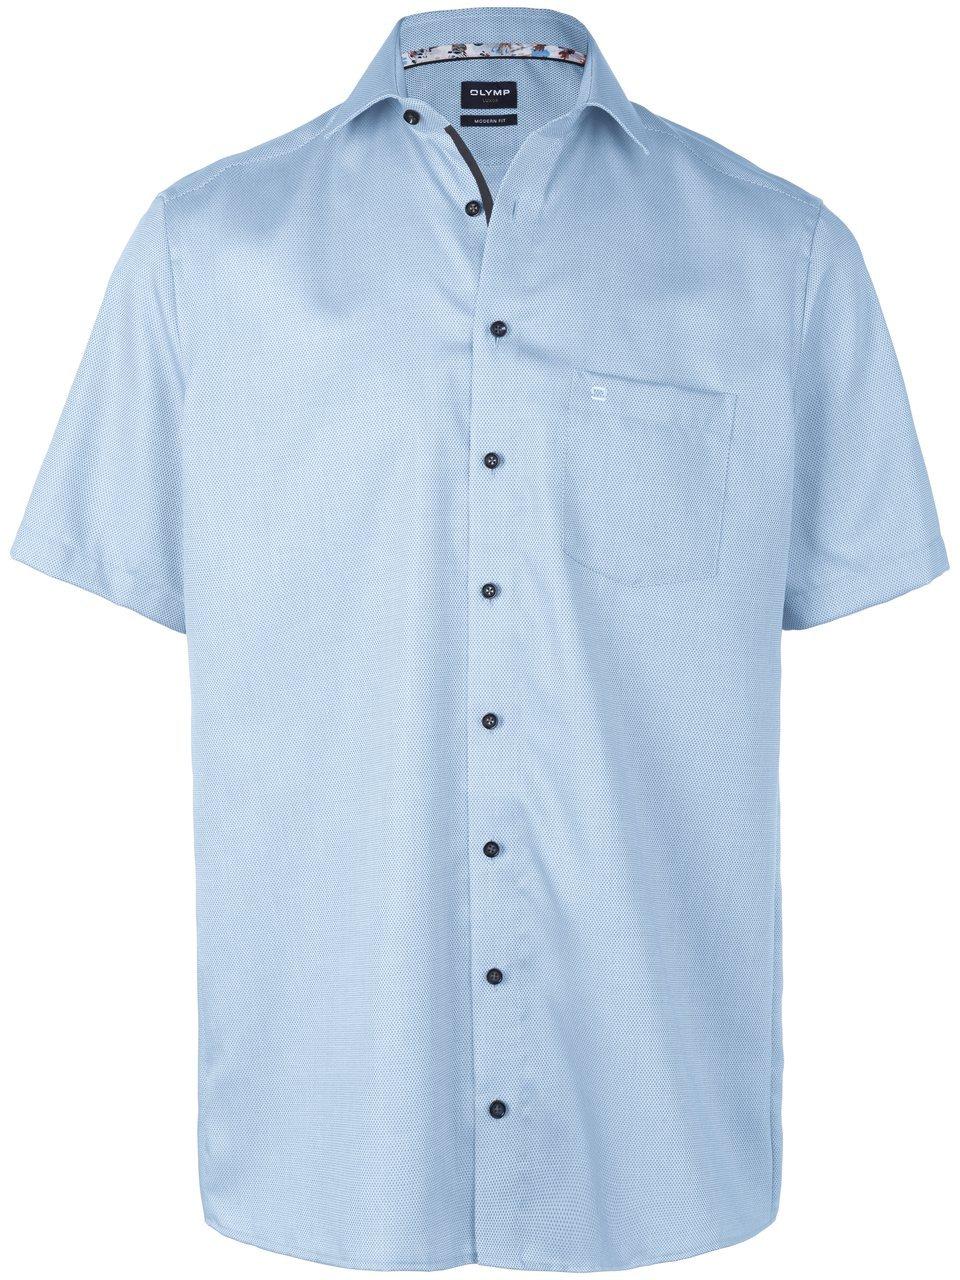 OLYMP - Short Sleeve Overhemd Luxor Melange Lichtblauw - Maat 43 - Comfort-fit